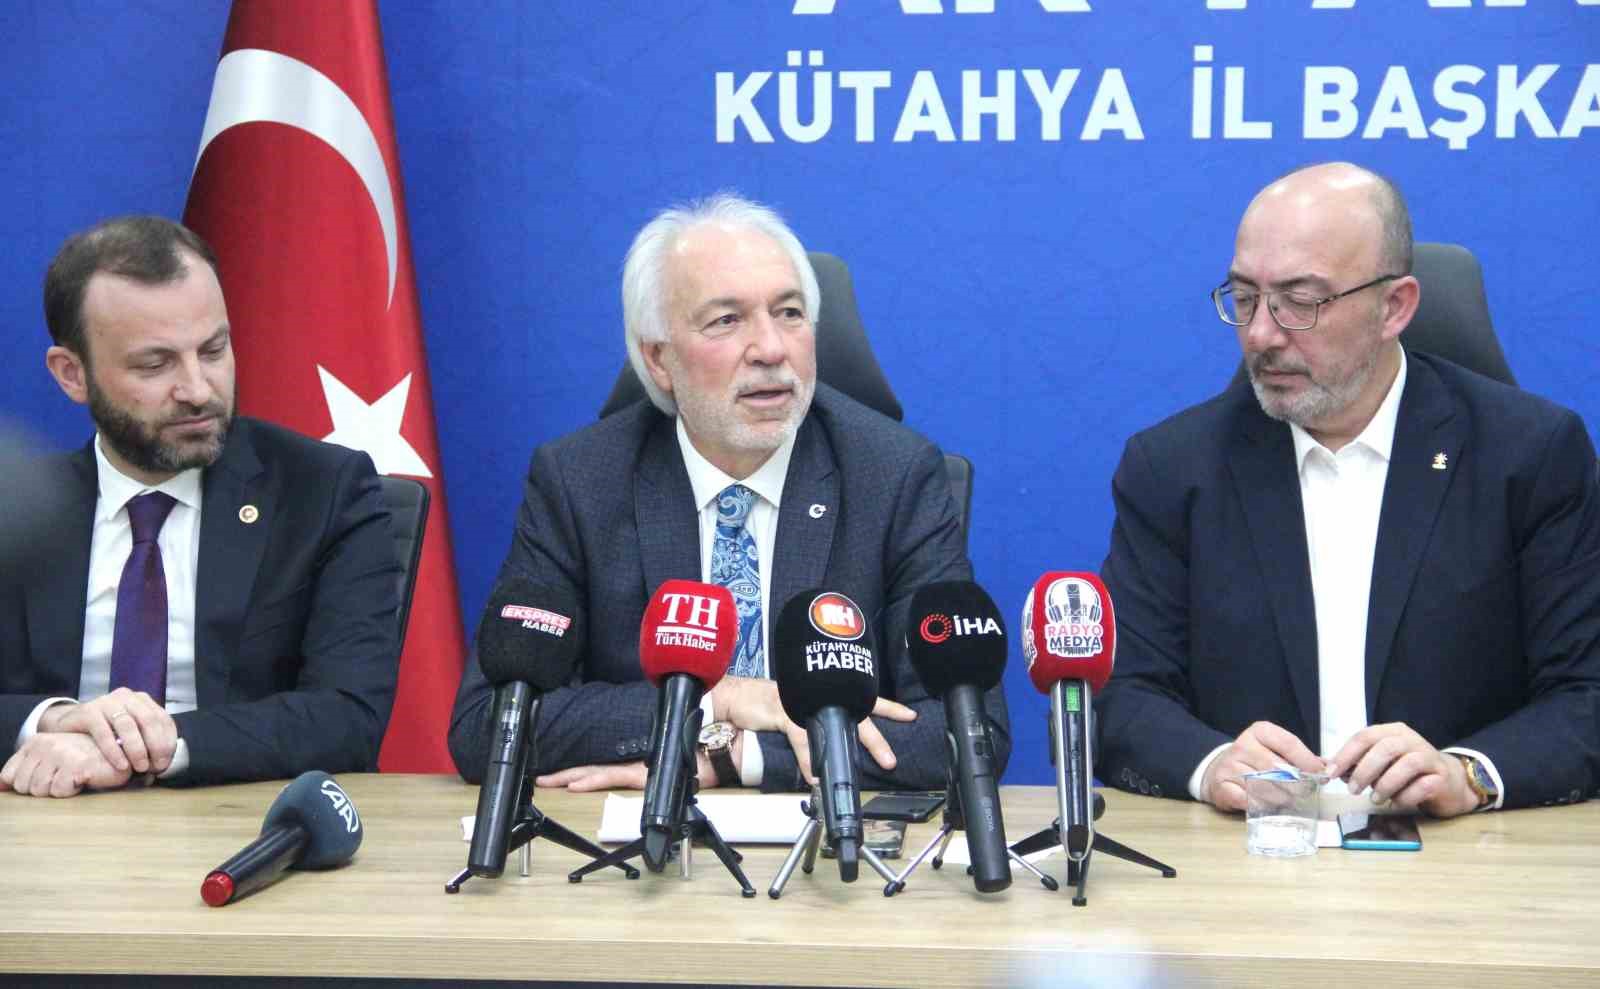 Kütahya Belediye Başkanı Mustafa Önsay: “Kamil Saraçoğlu ile birlikte Kütahya Belediyesi’ni tekrar kazanacağız